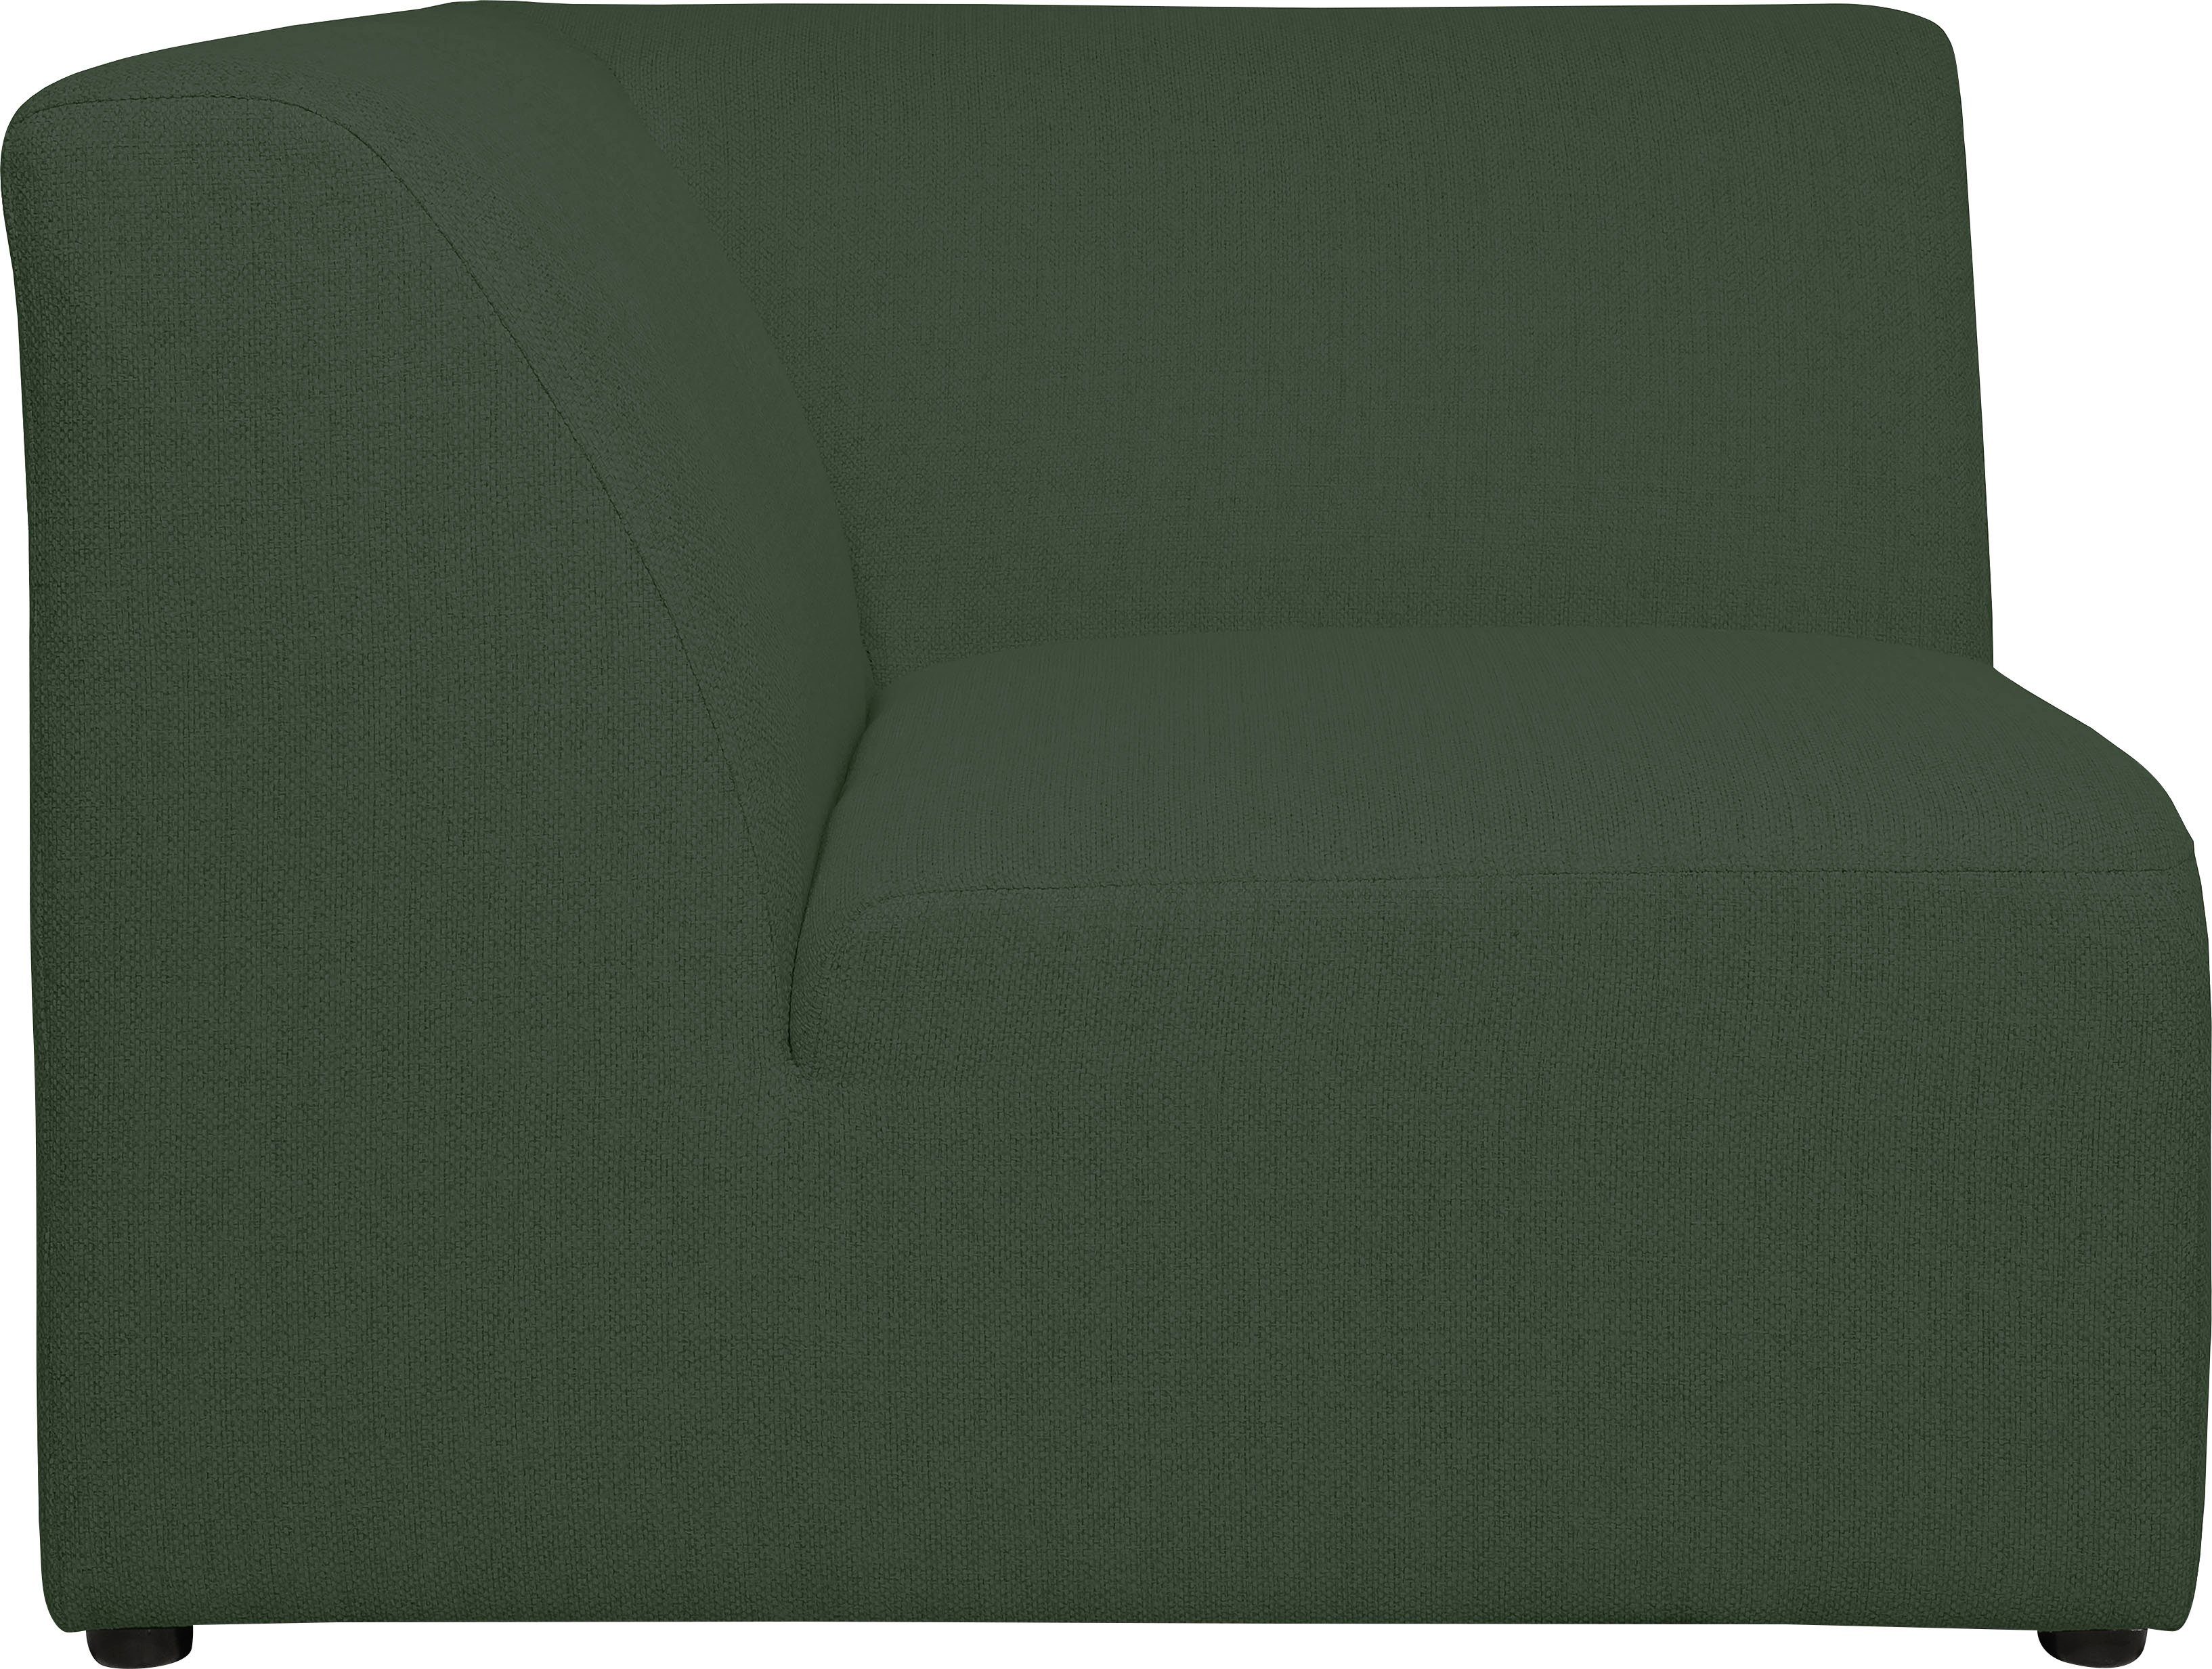 INOSIGN Sofa-Eckelement Koa, angenehmer Proportionen Komfort, khaki schöne